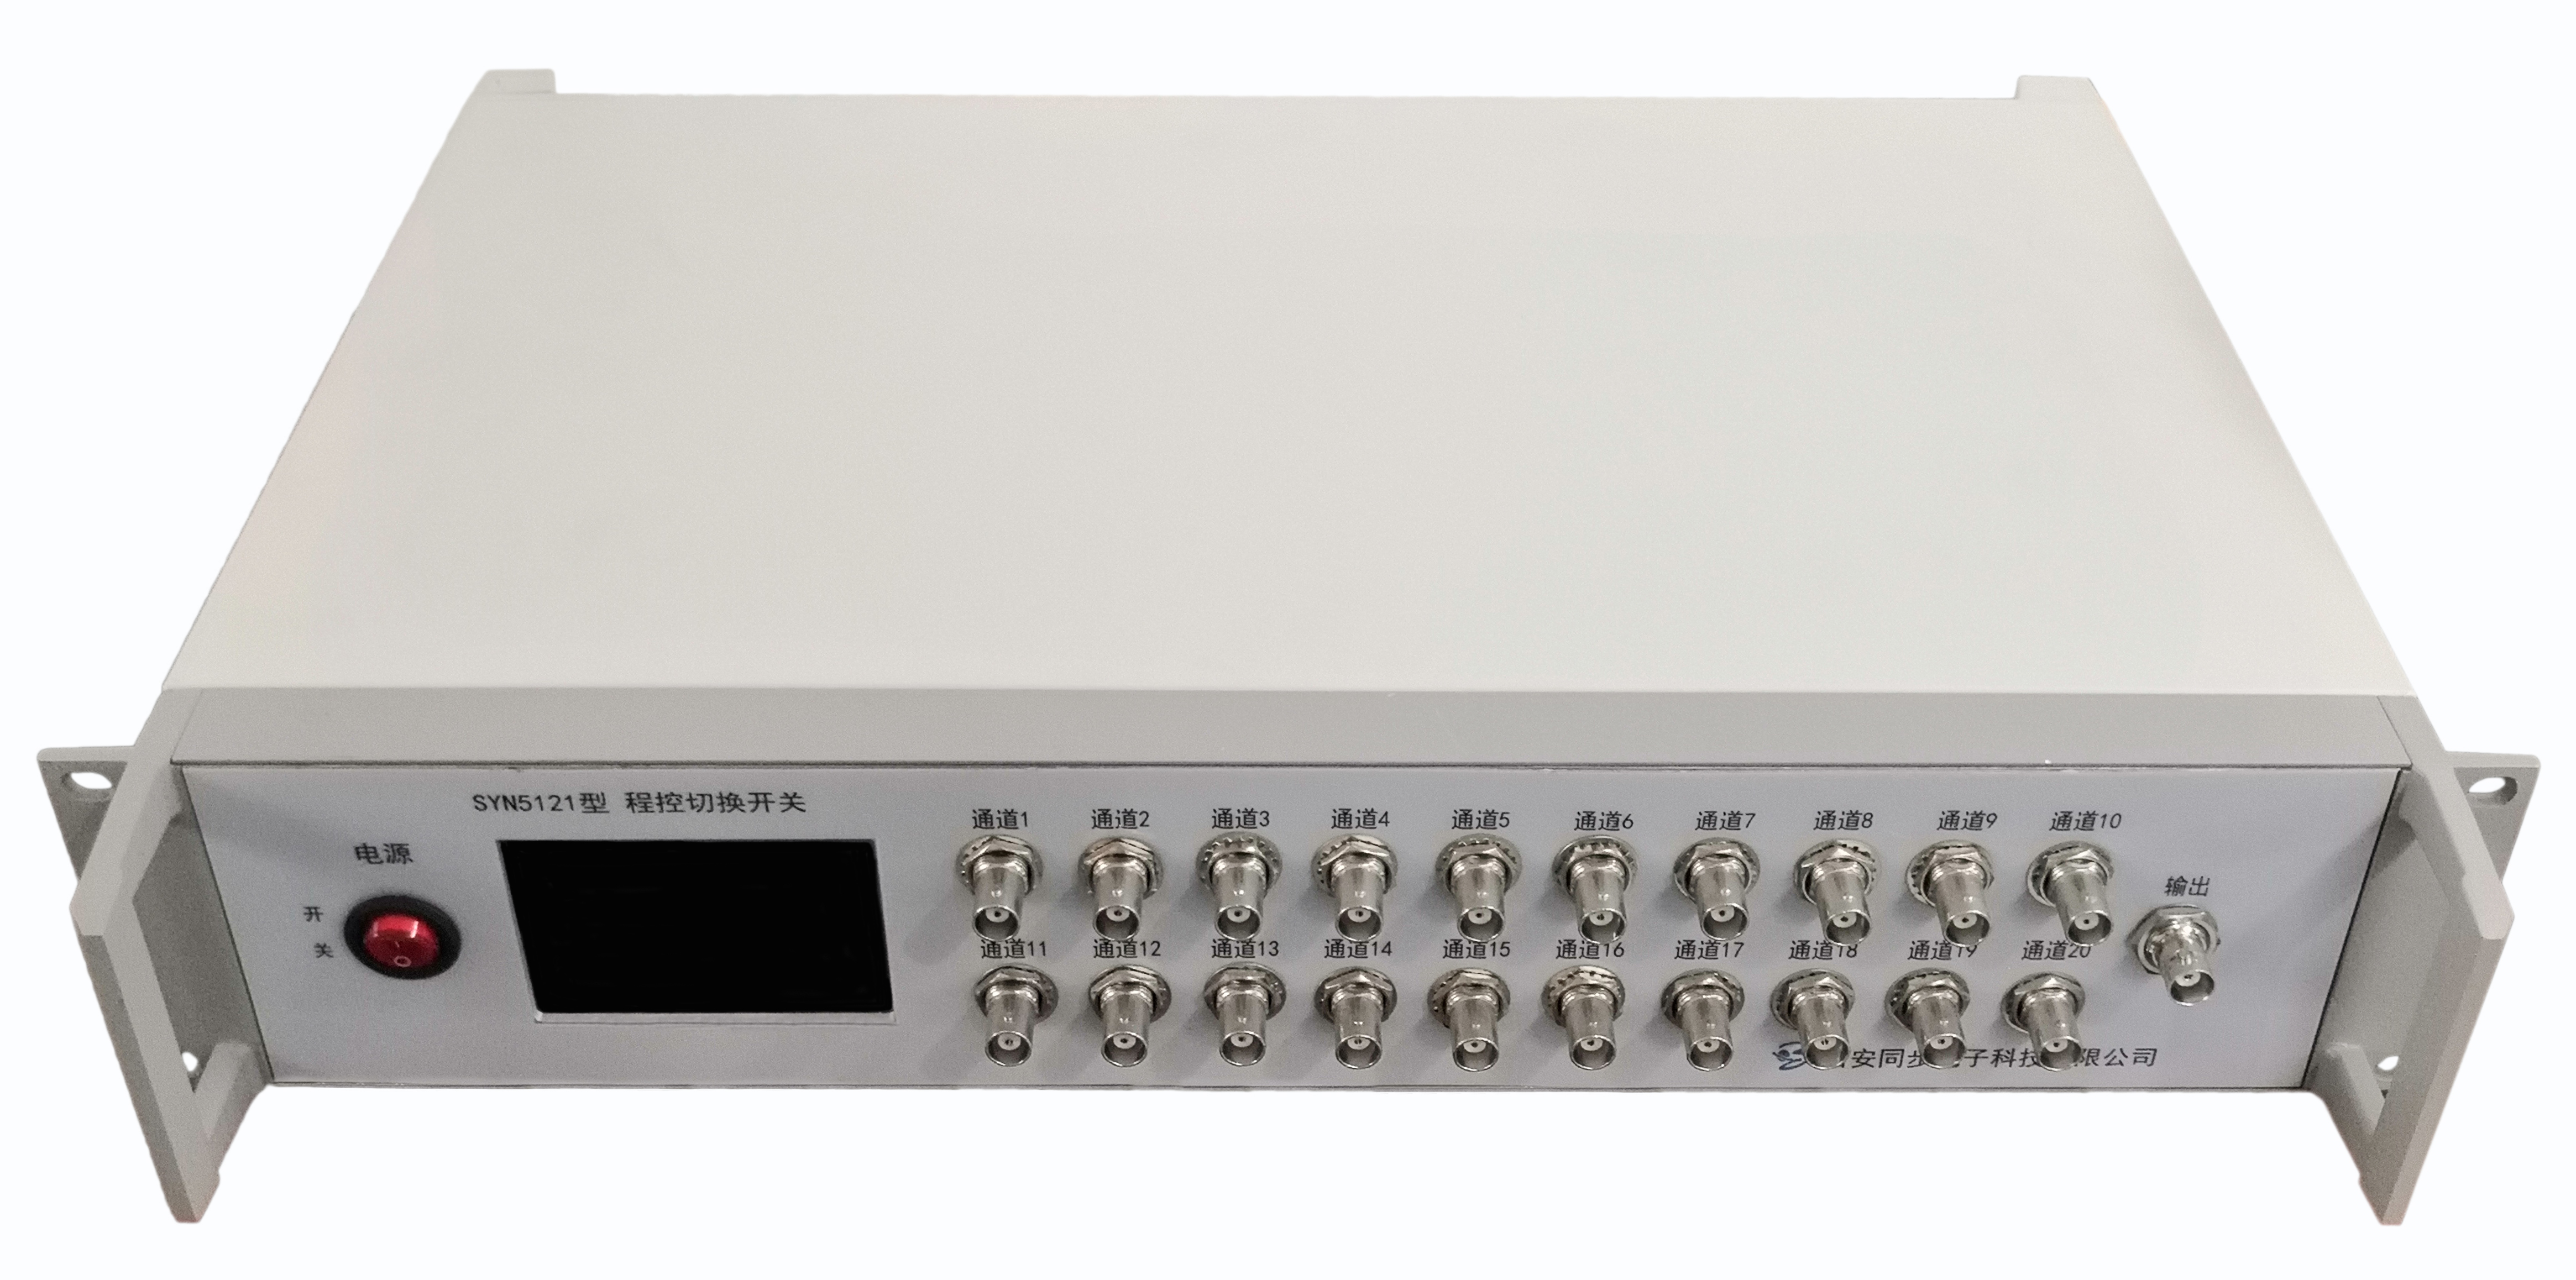 同步天下程控切换开关SYN5121控制一路220V交流电通断用于测量频率复现性20路DC-100MHz信号输入